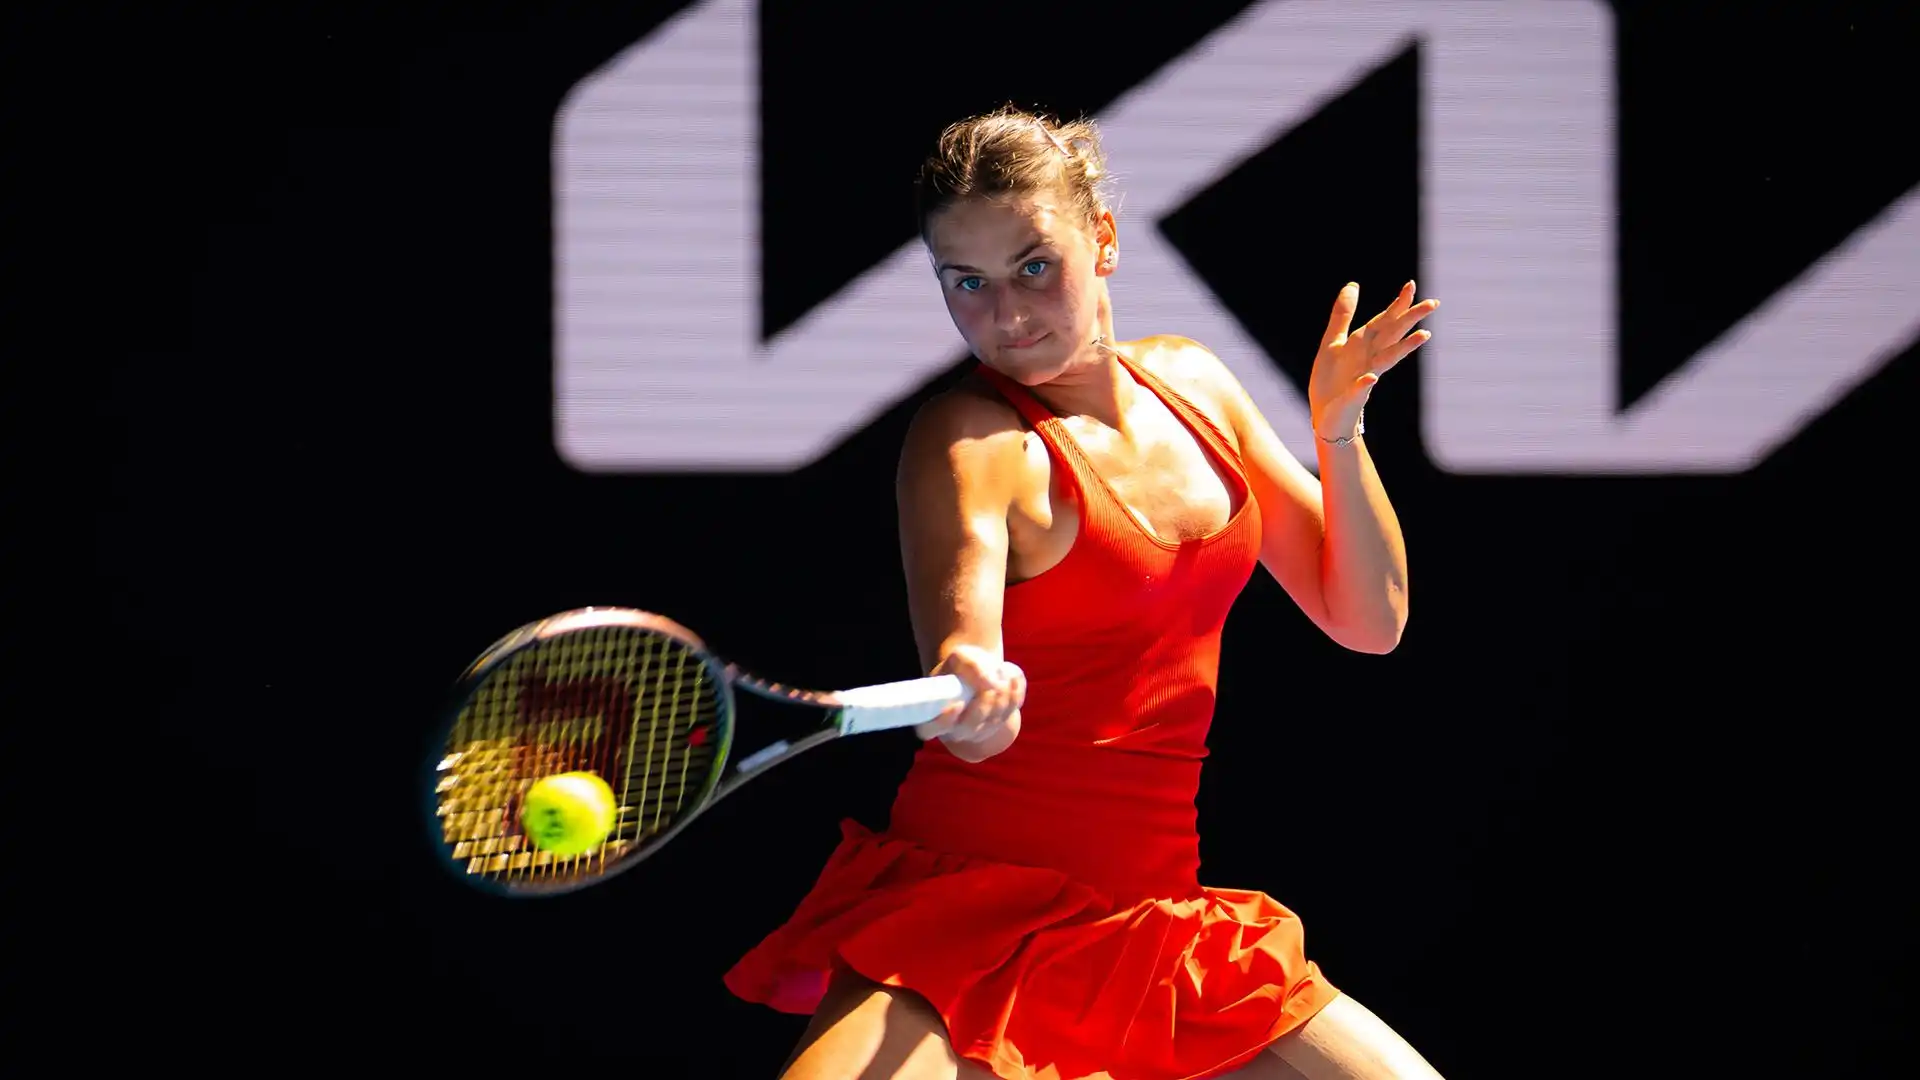 Agli Open di Francia è arrivata in semifinale nel doppio femminile, in coppia con la rumena Ruse